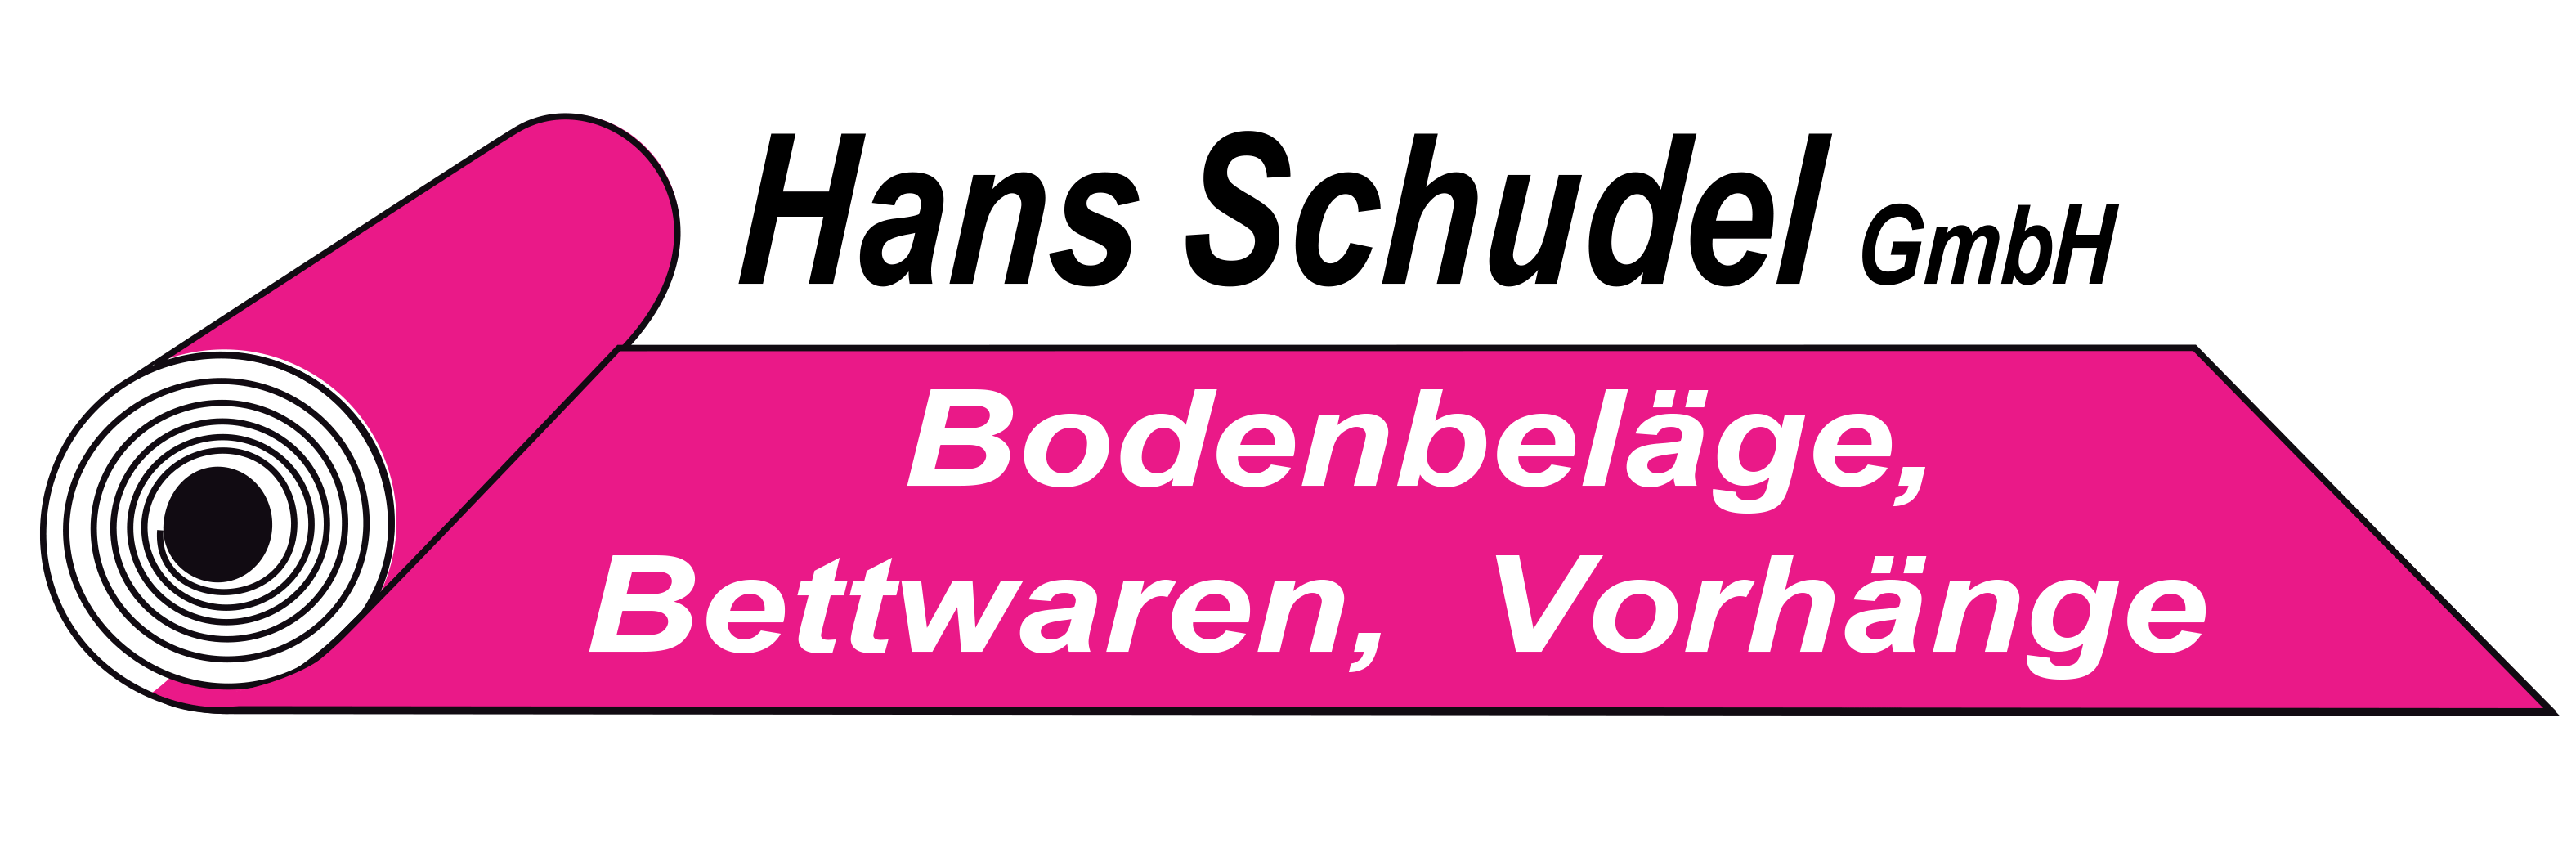 Schudel Hans GmbH